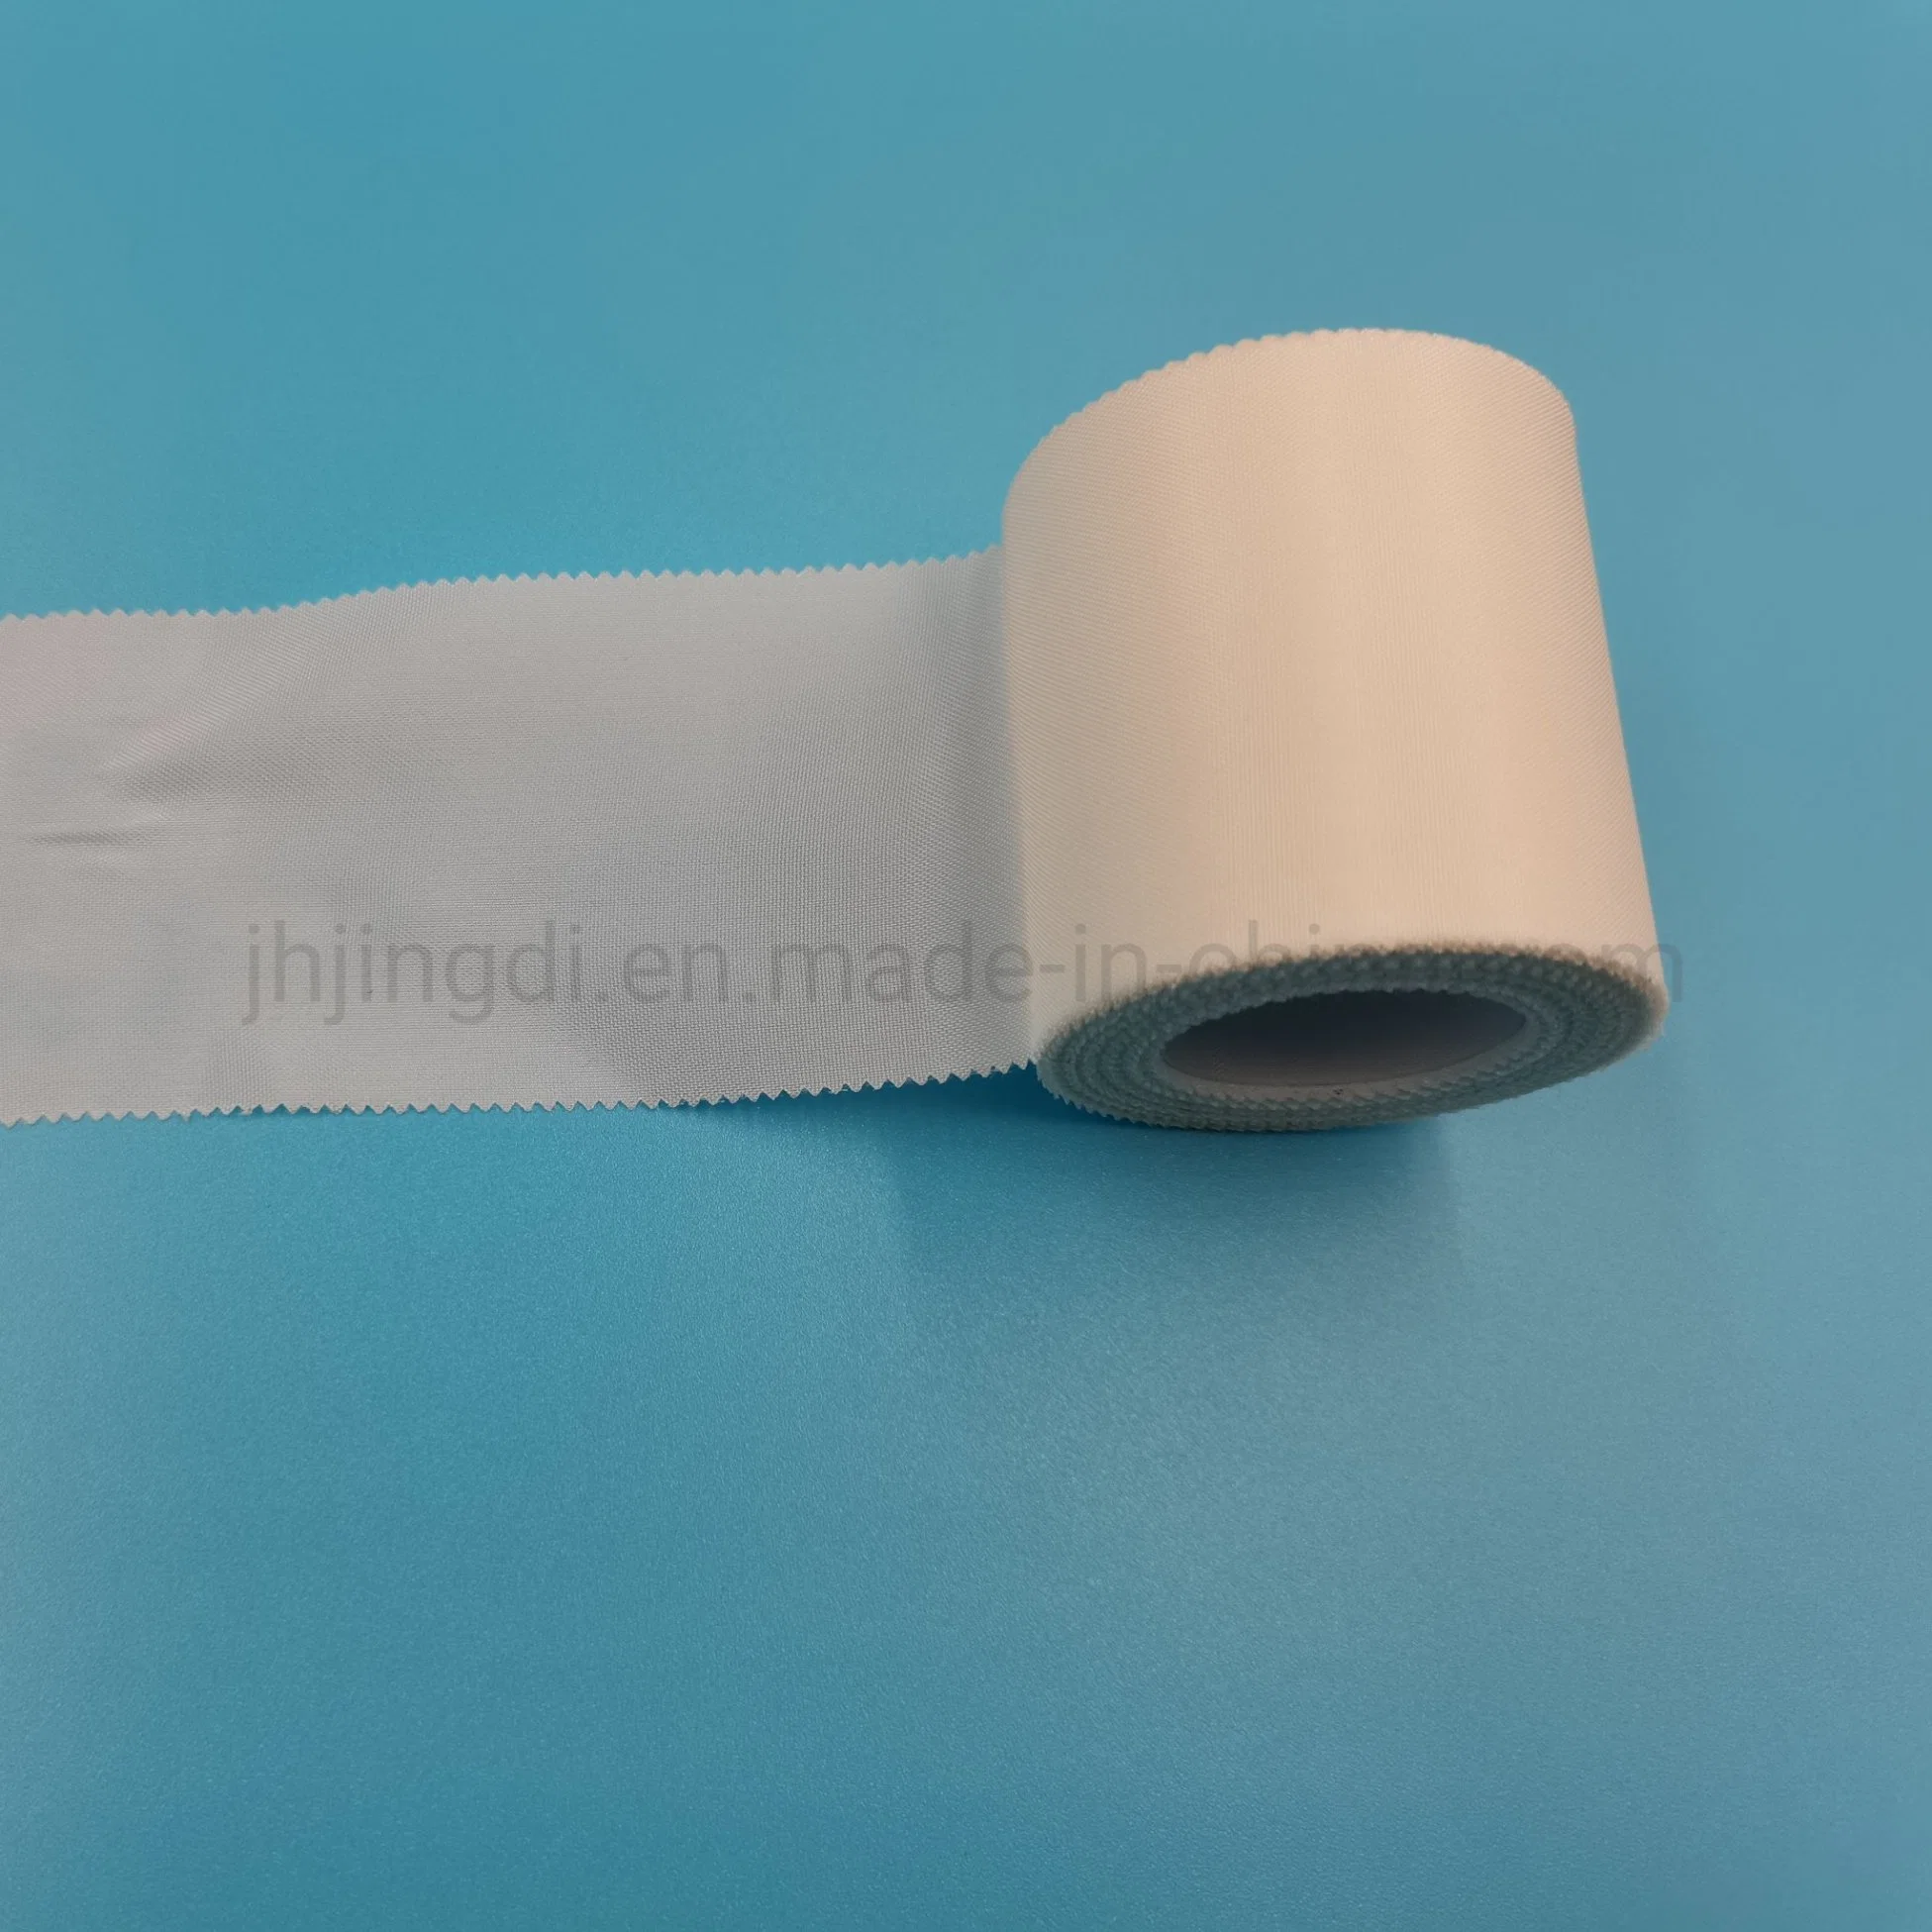 لفافة جصية شريط الحرير اللاصق من الحرير اللاصق باللون الأبيض